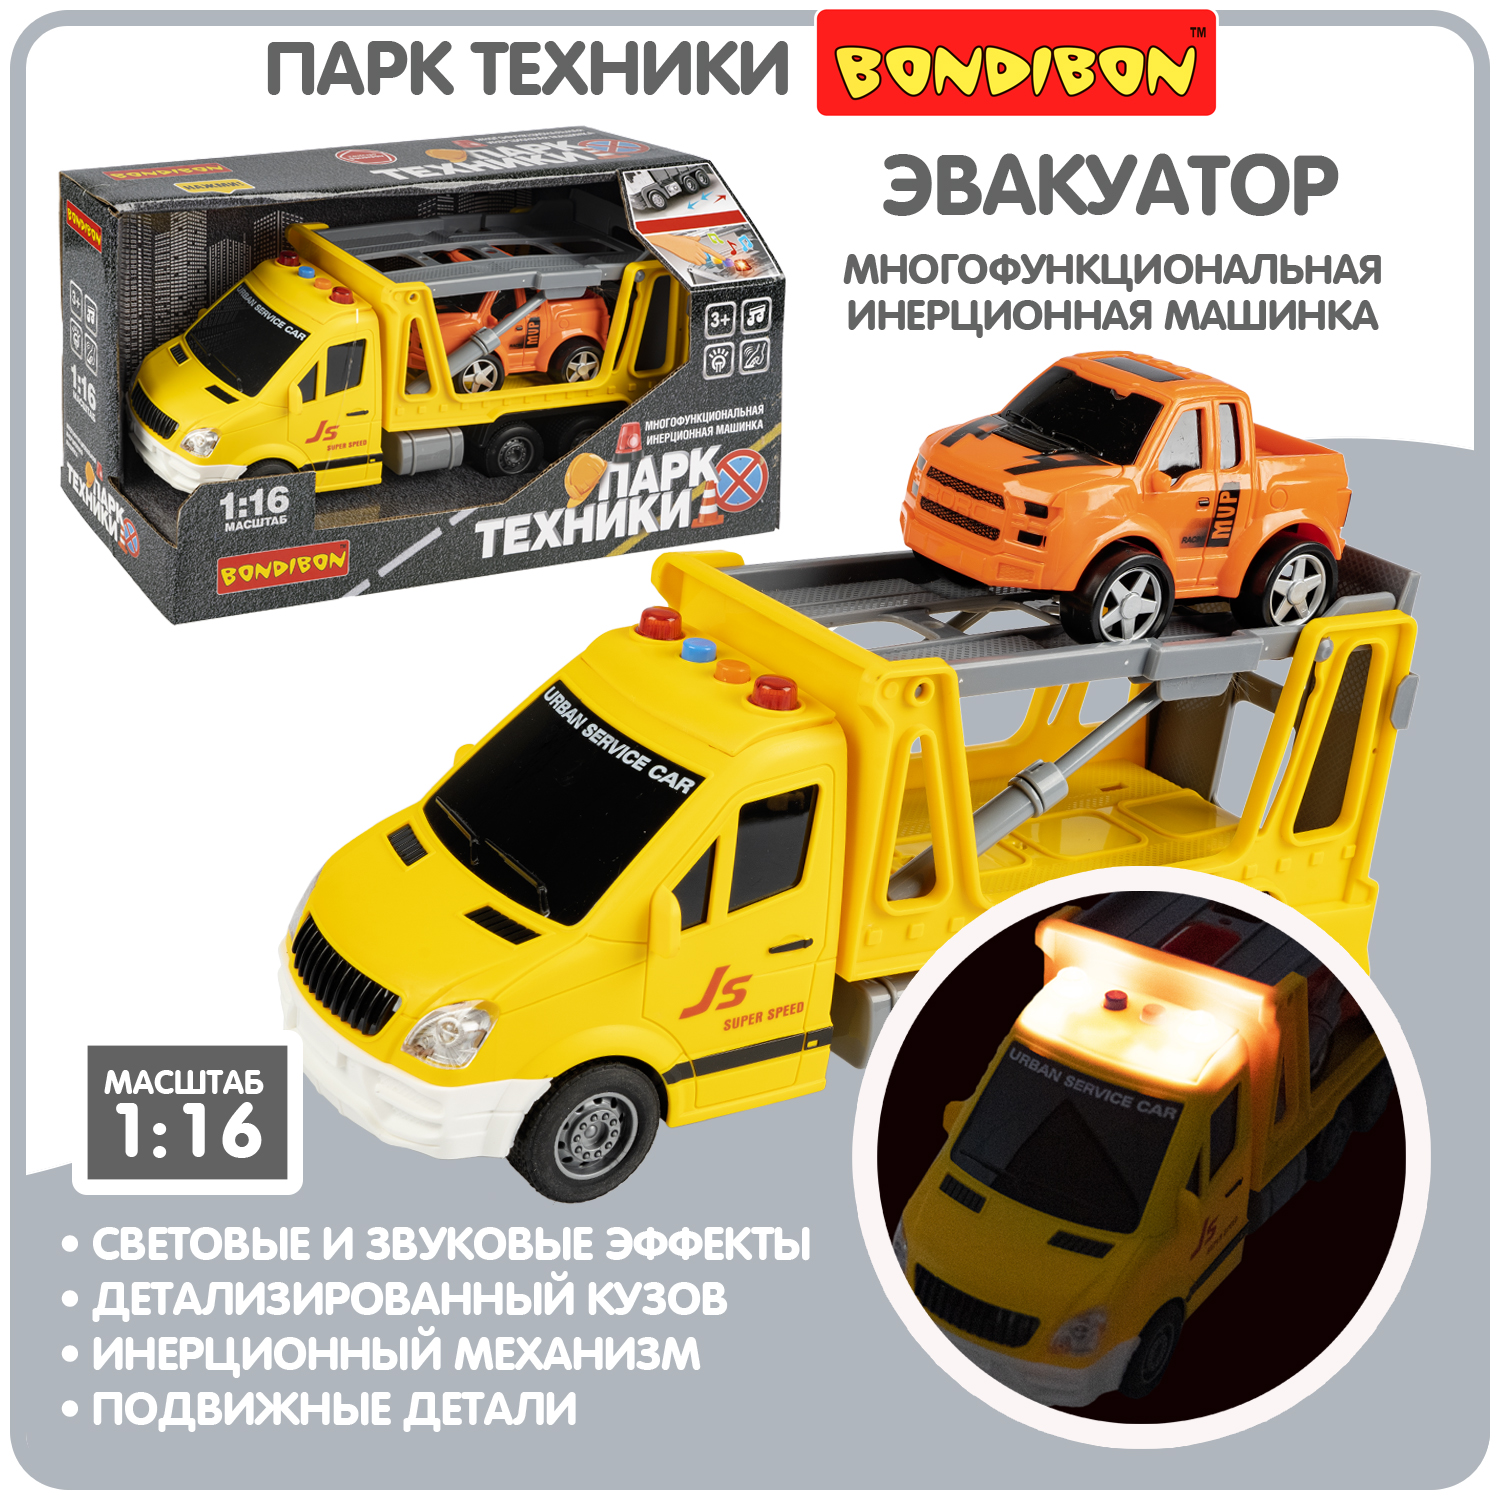 Многофункциональная инерционная машинка Bondibon «ПАРК ТЕХНИКИ», желтый эвакуатор, BOX bondibon инерционная машина парк техники пожарная машина с краном